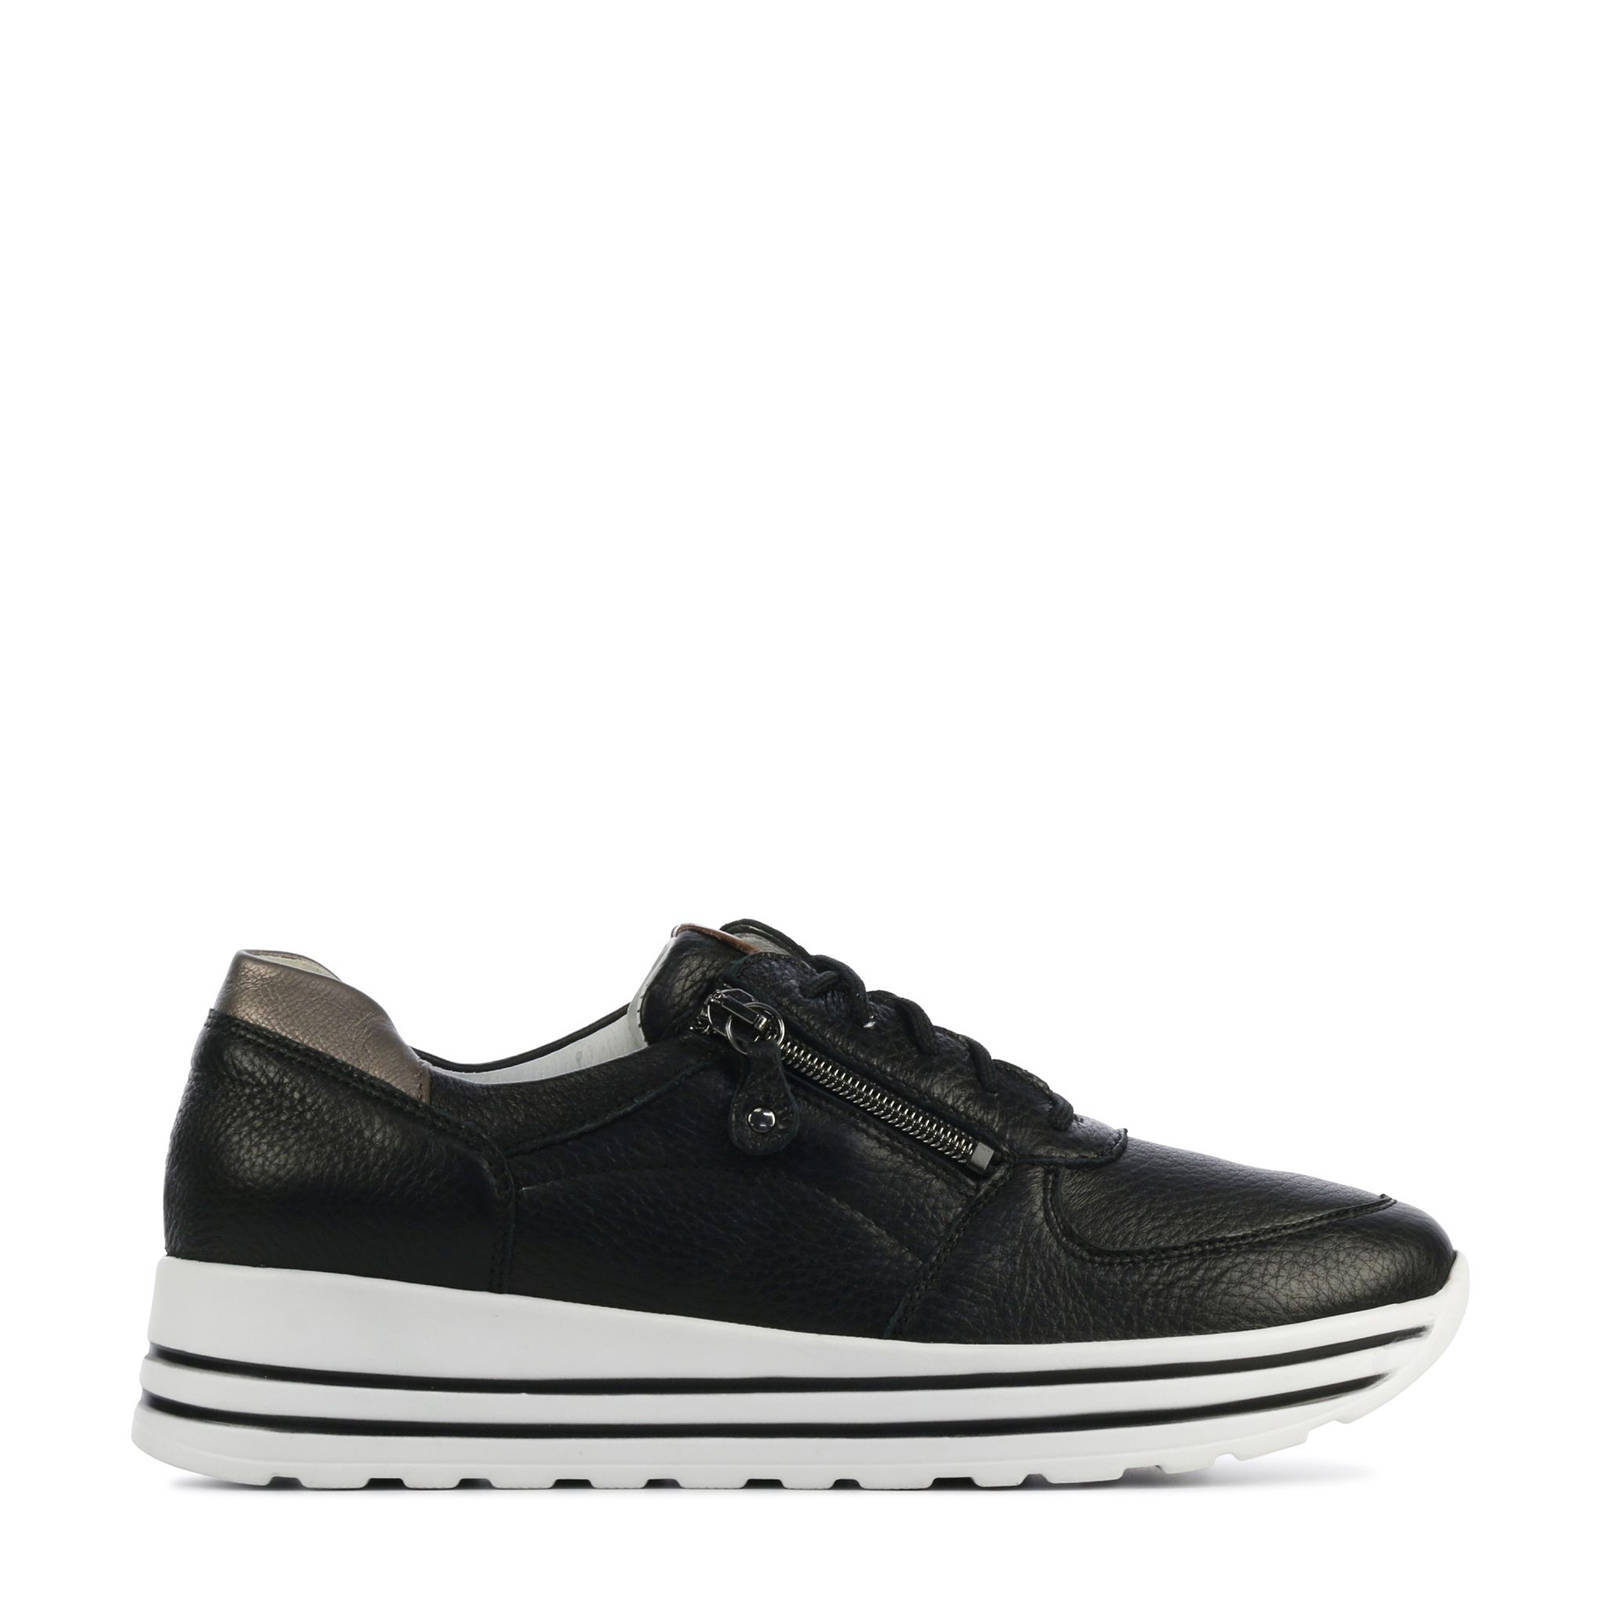 Waldlaufer 758009 comfort leren sneakers zwart/zilver online kopen